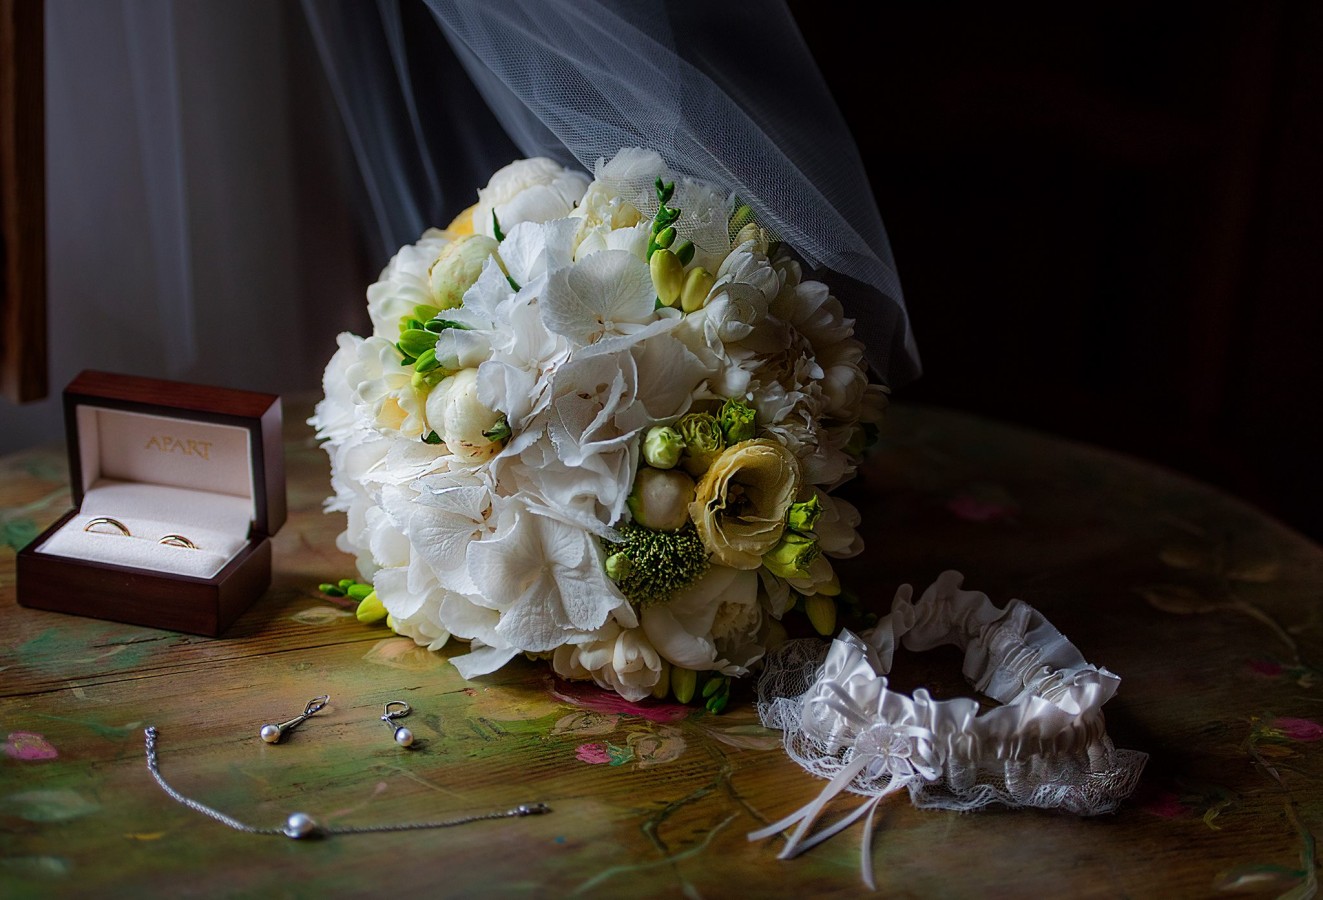 zdjęcia kielce fotograf foto-molly portfolio zdjecia slubne inspiracje wesele plener slubny